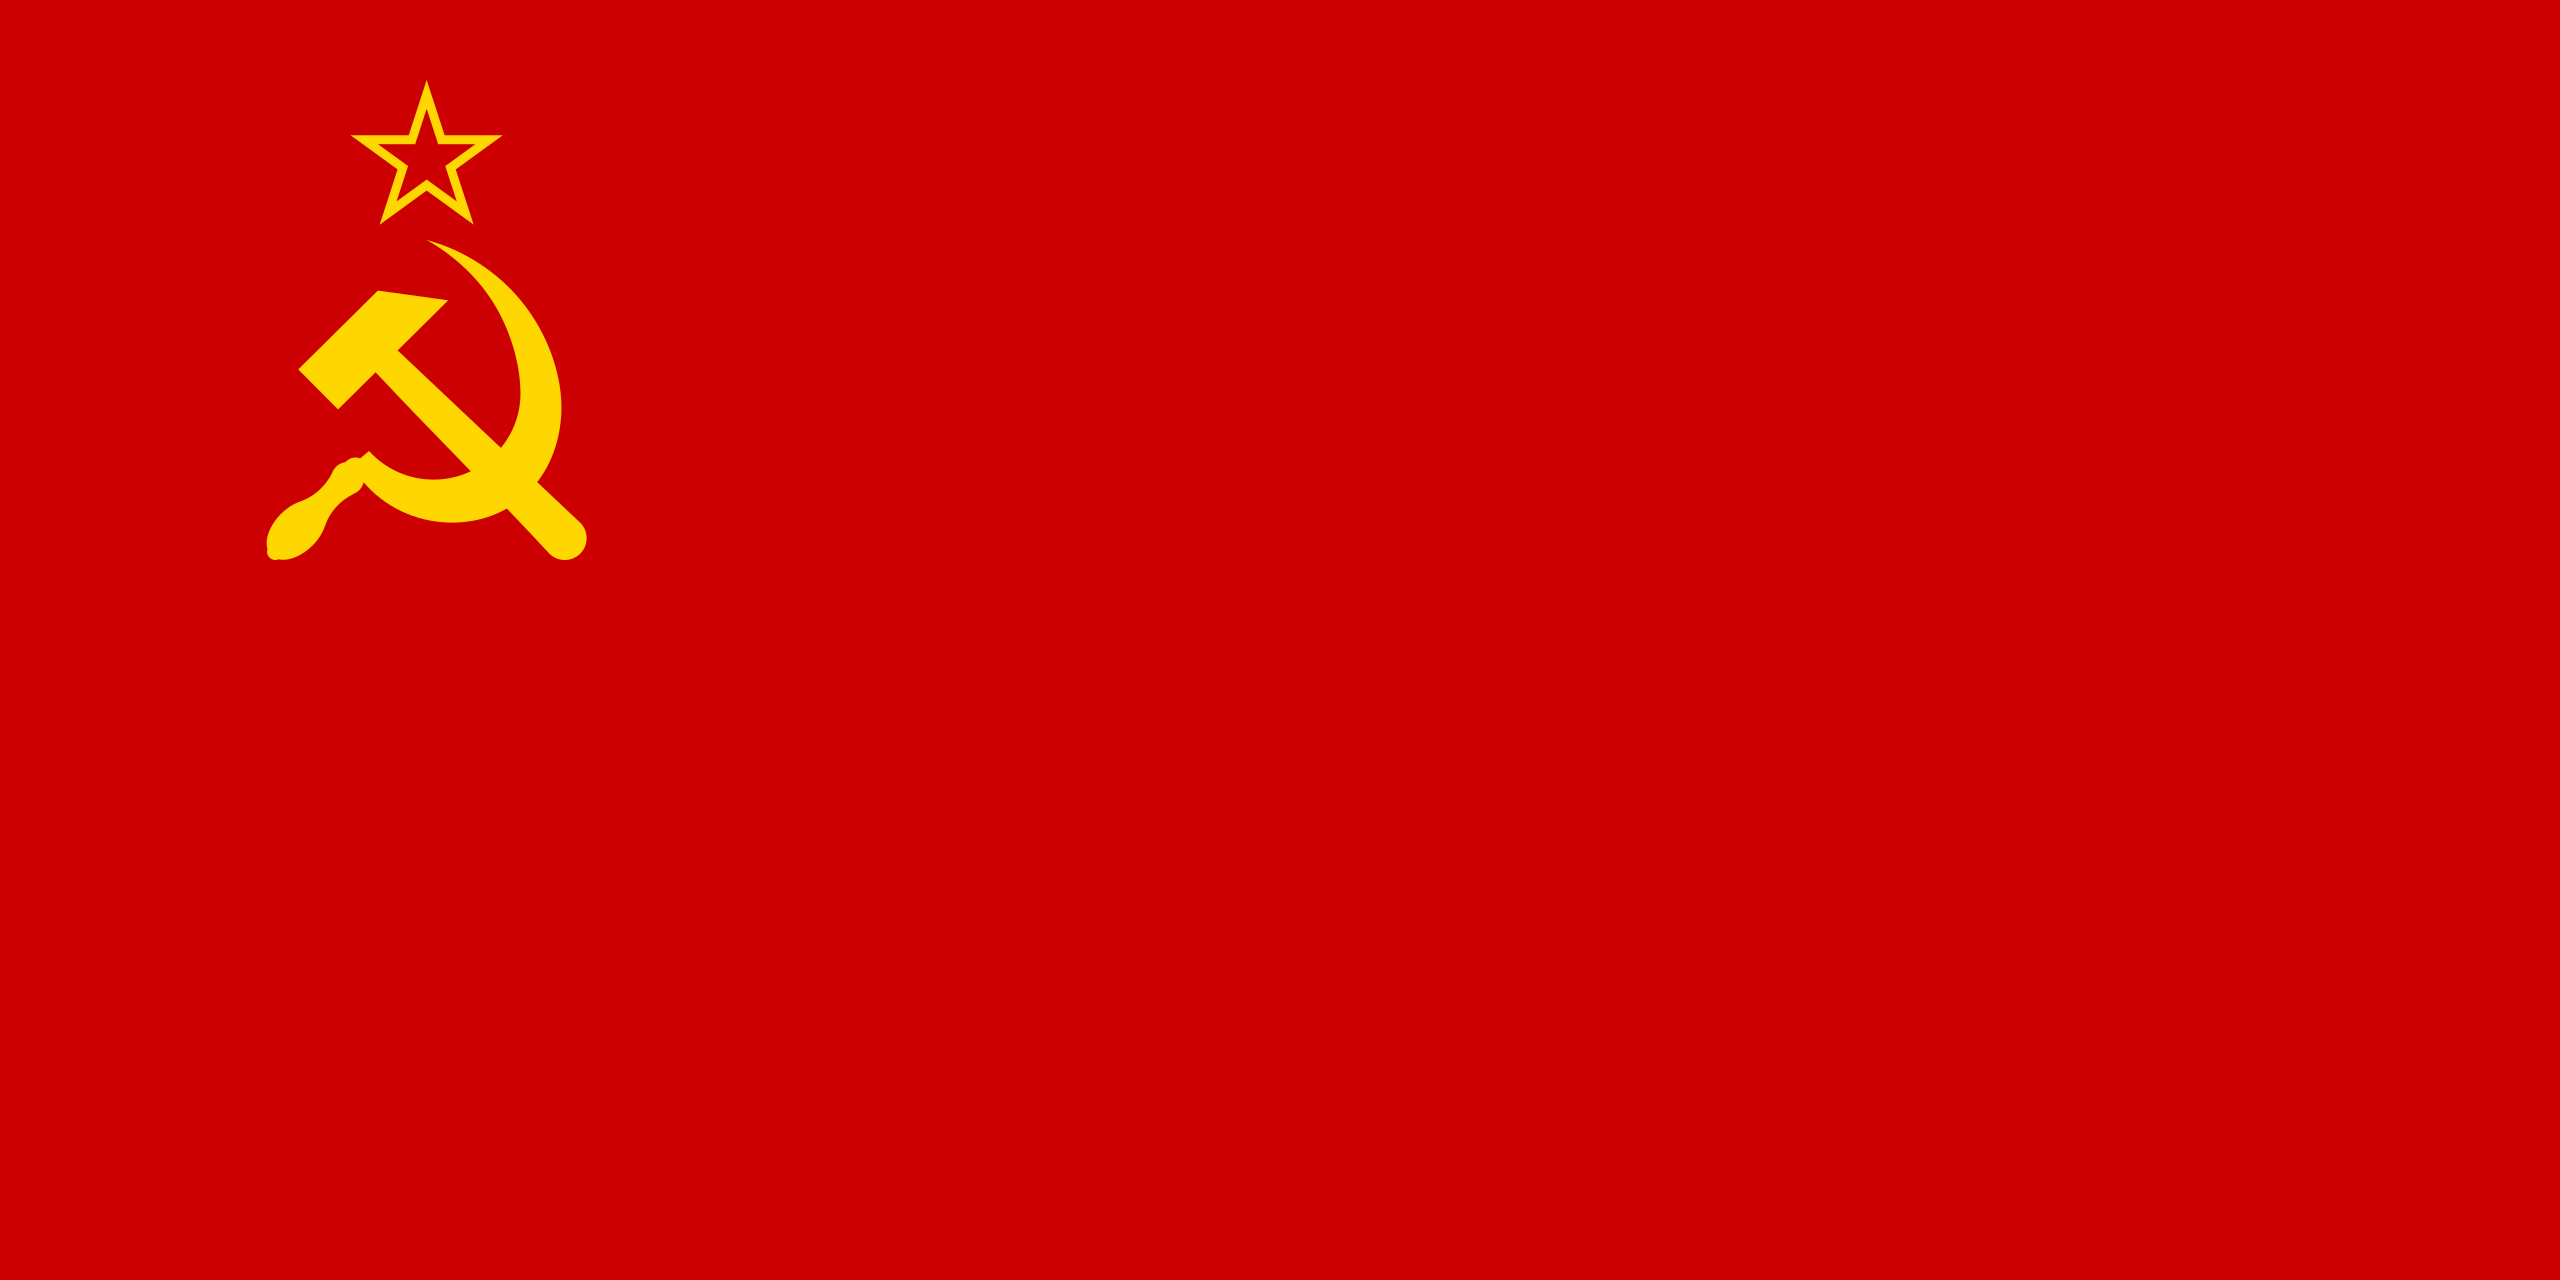 请问苏联国旗与苏修的国旗有什么区别呢